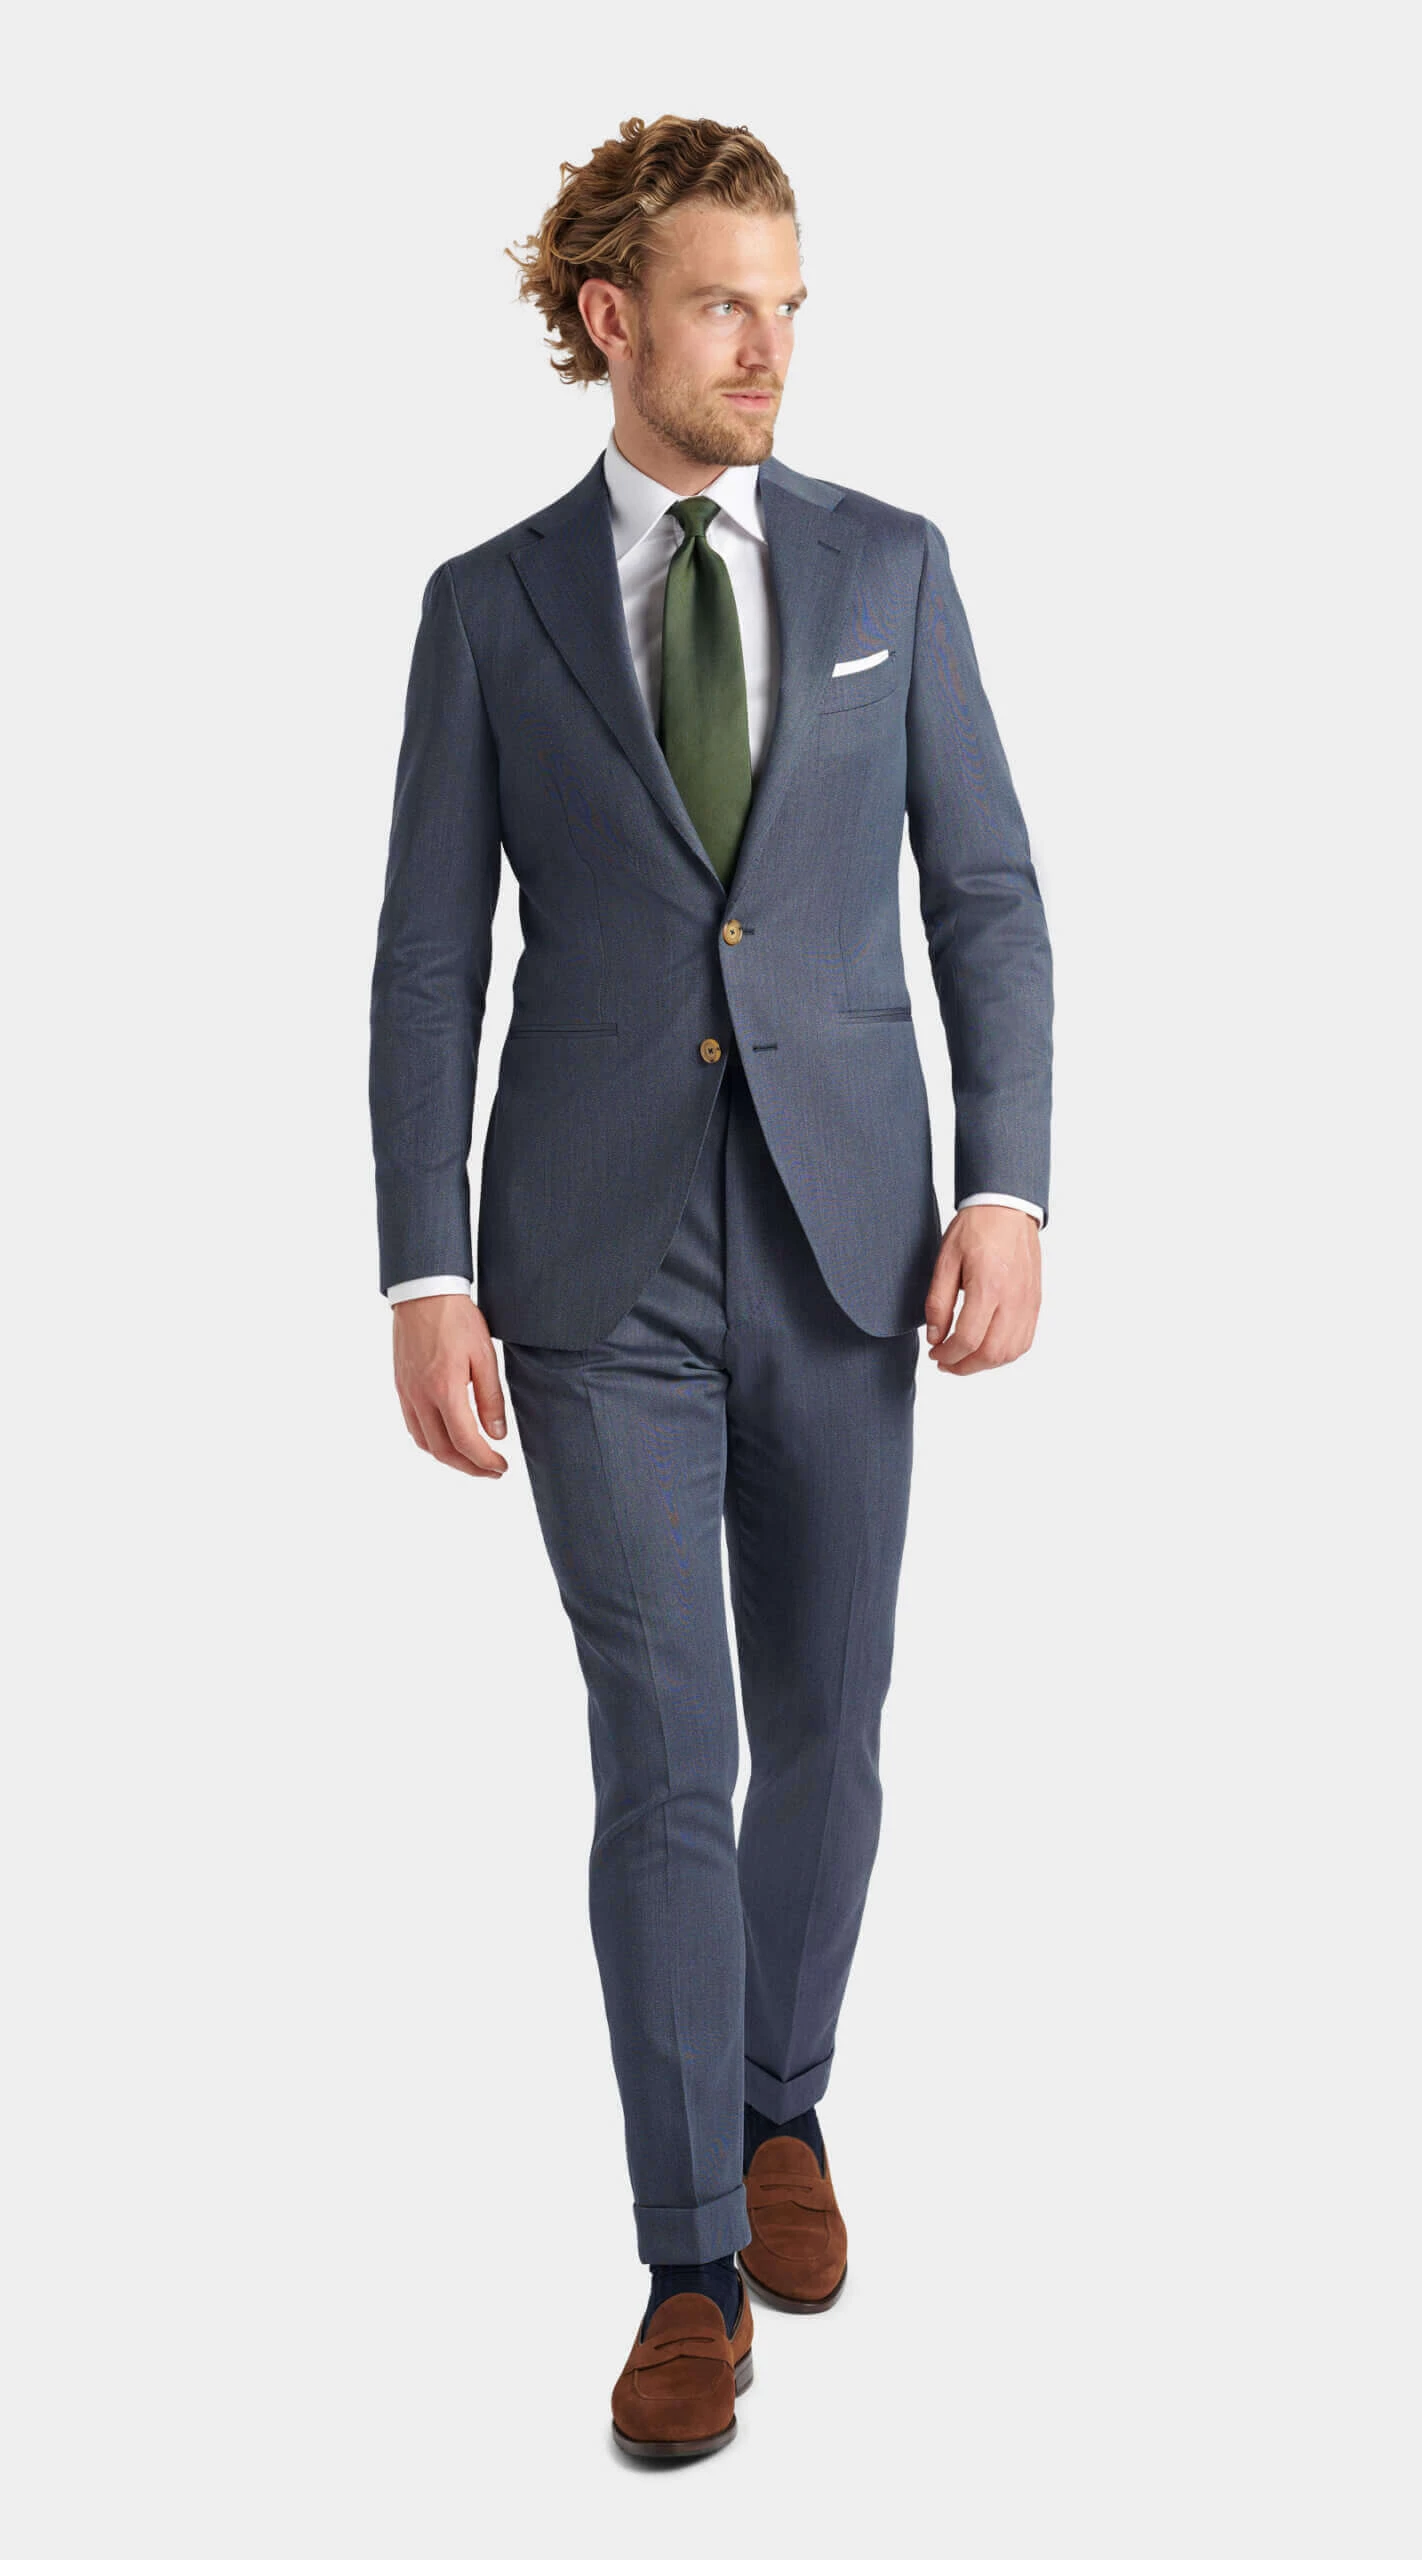 Copenhagen Covert suit / jakkesæt / anzug / dress